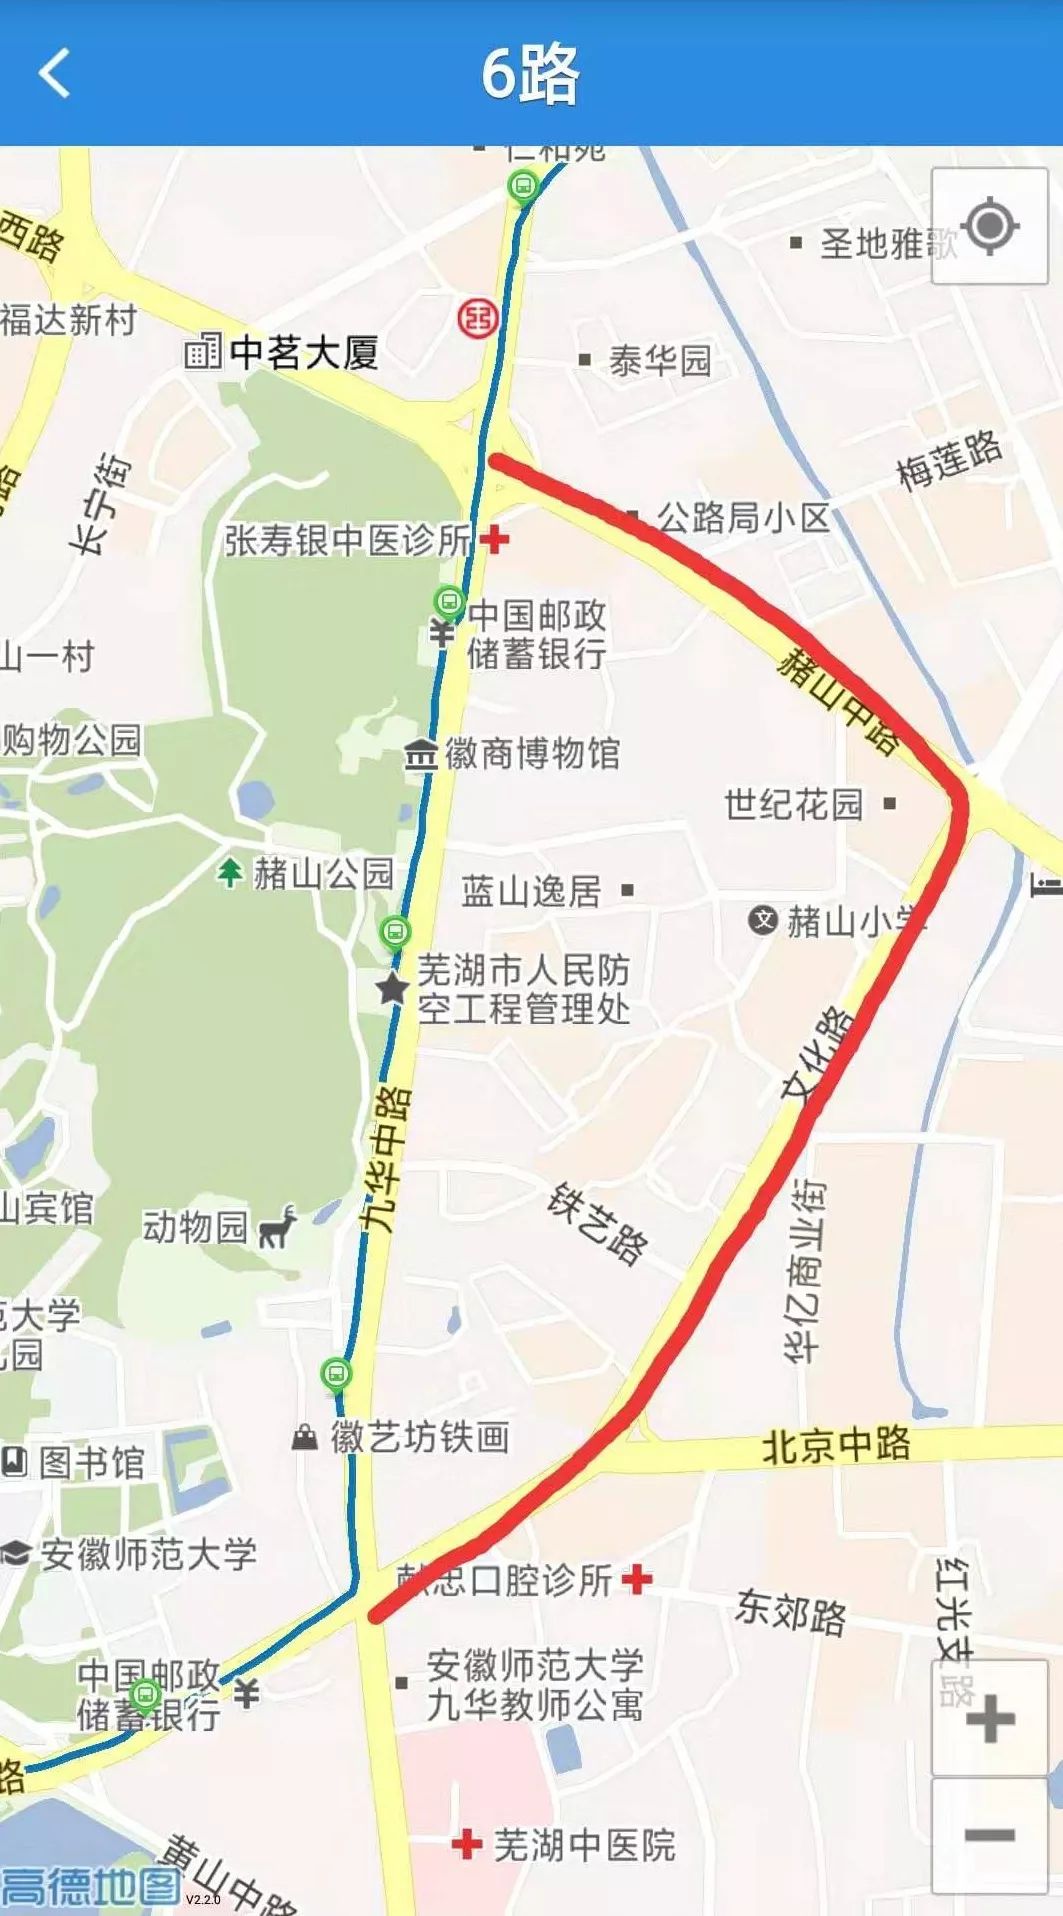 人在旅途注意9月22日起芜湖市7条公交线路临时调整